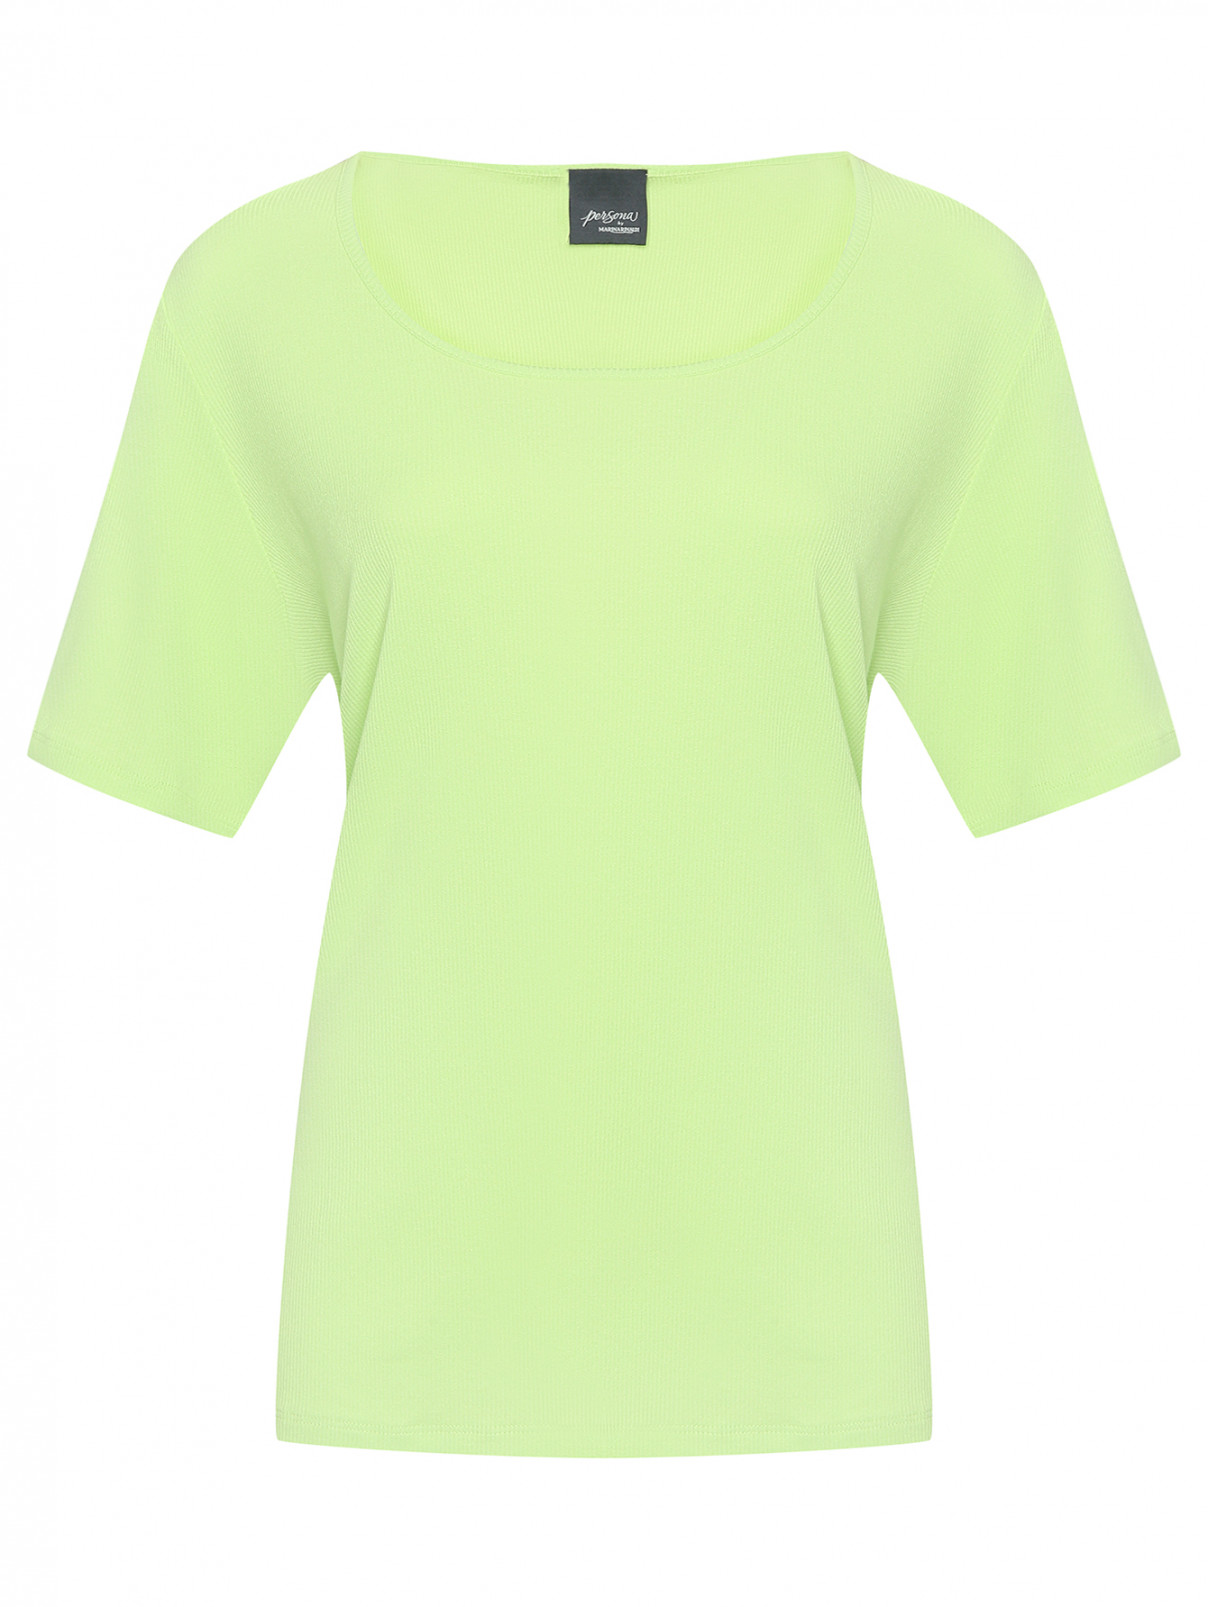 Однотонная футболка в рубчик Persona by Marina Rinaldi  –  Общий вид  – Цвет:  Зеленый